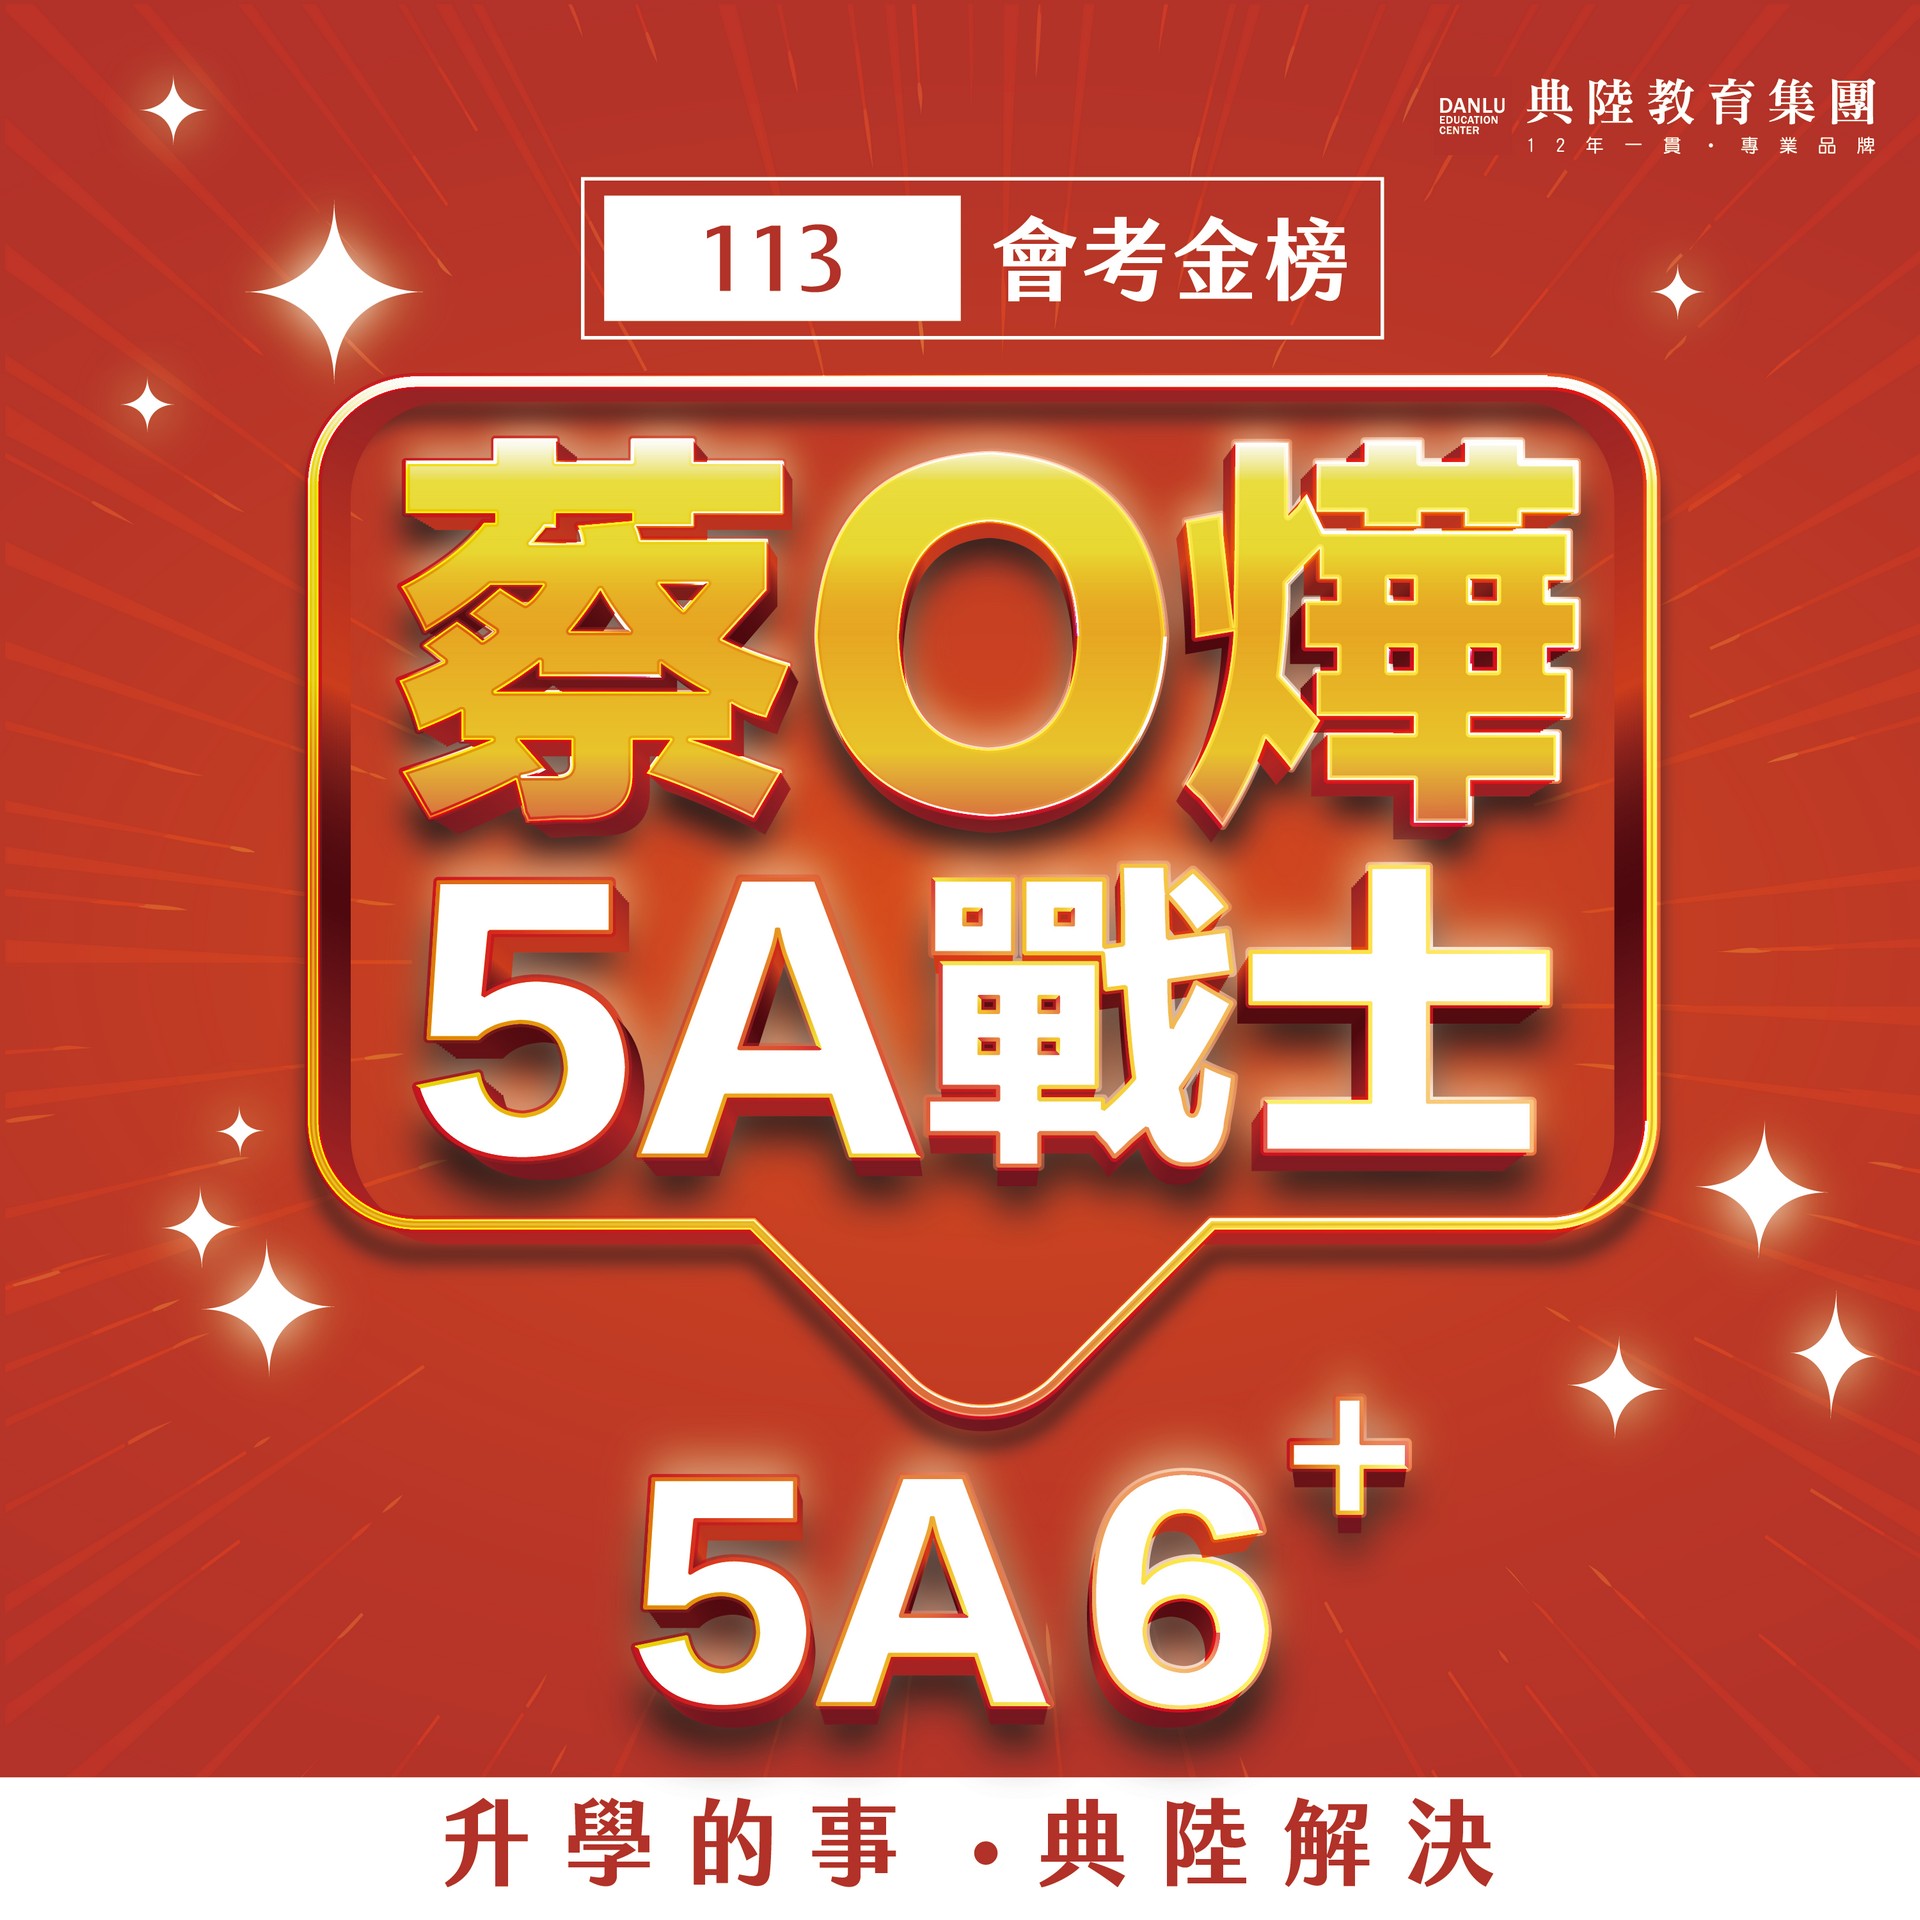 5A6+蔡愷燁